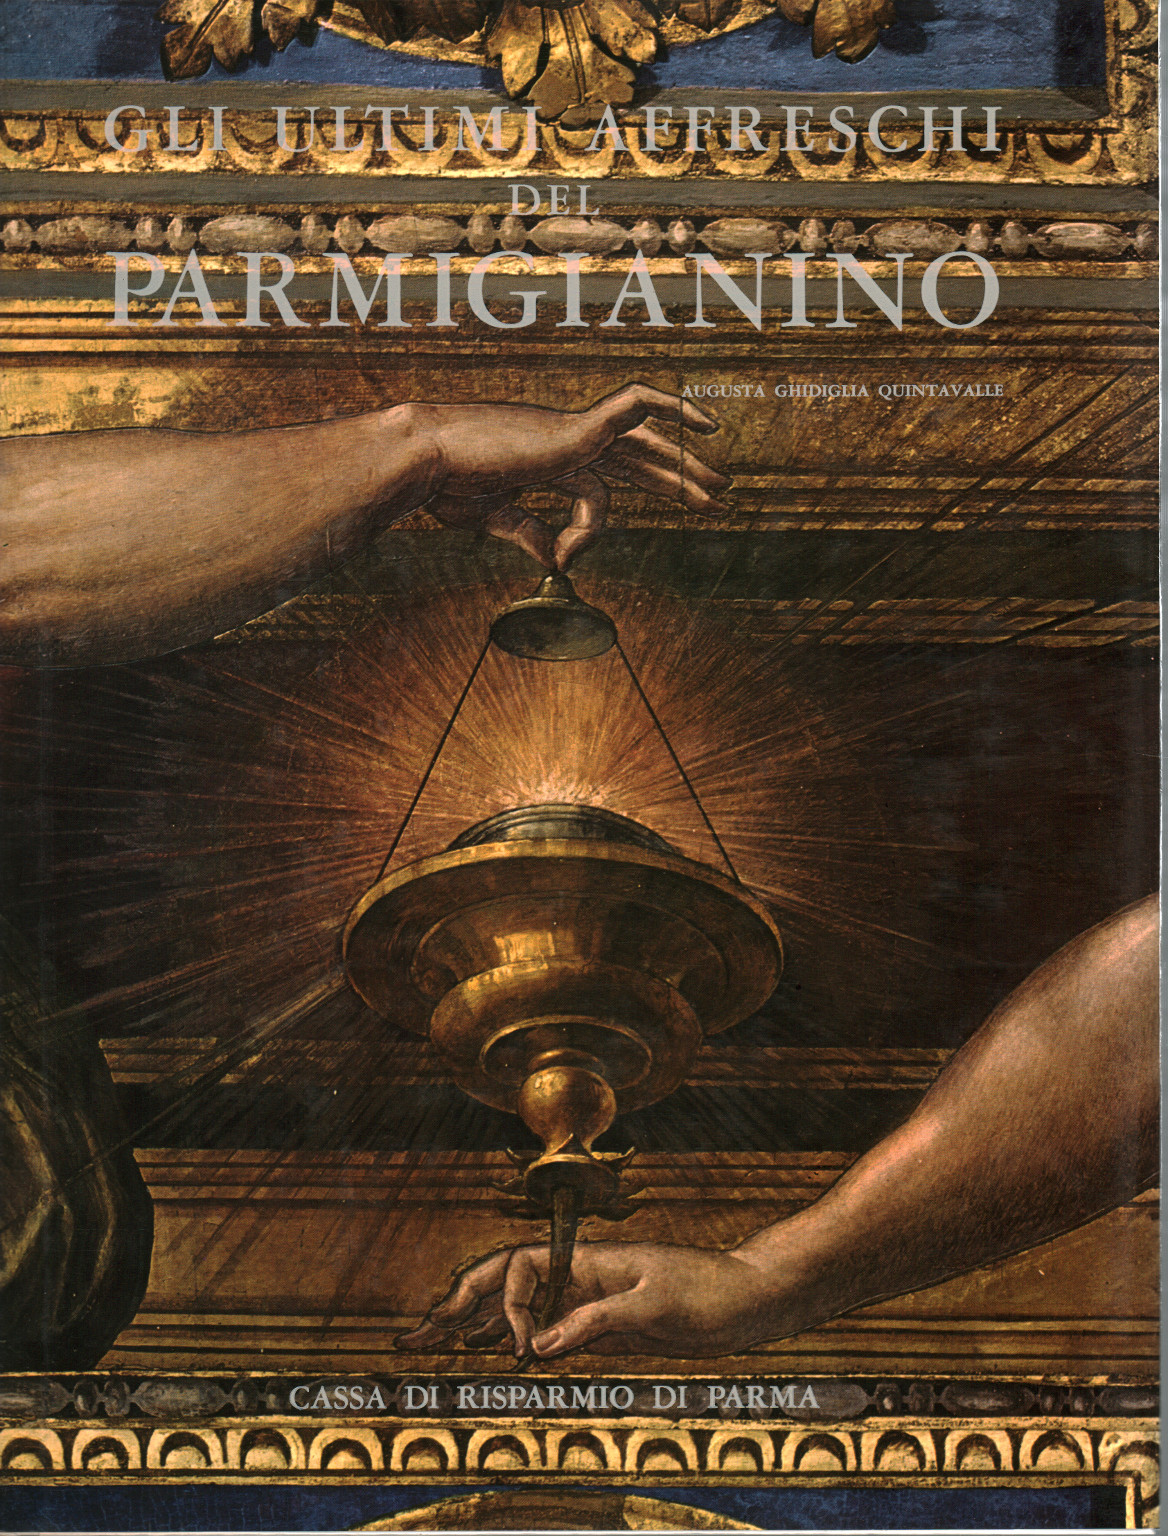 Los últimos frescos de Parmigianino, Augusta Ghidiglia Quintavalle